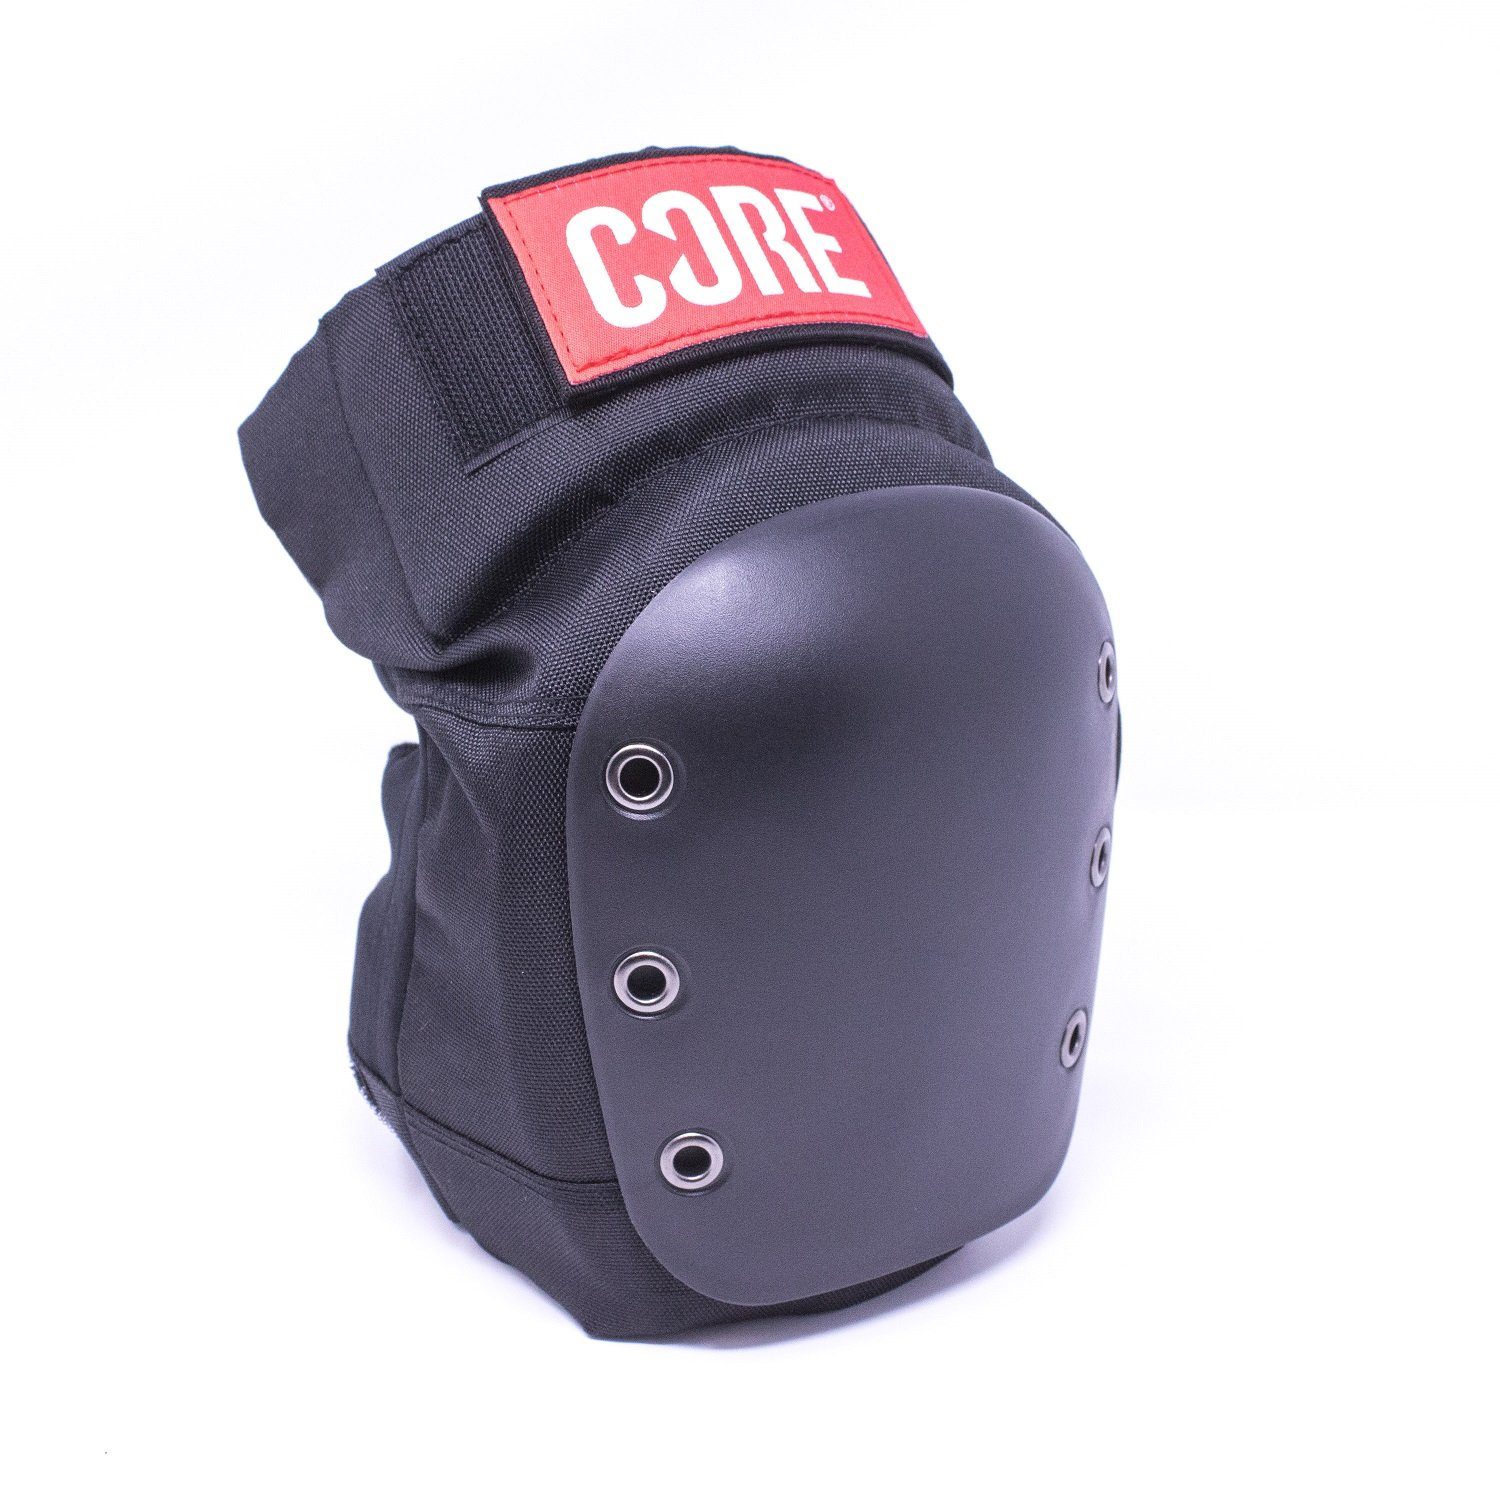 Protektoren-Set XS Sports Knieschoner Protection Pads Knee Core Street Action schwarz Core